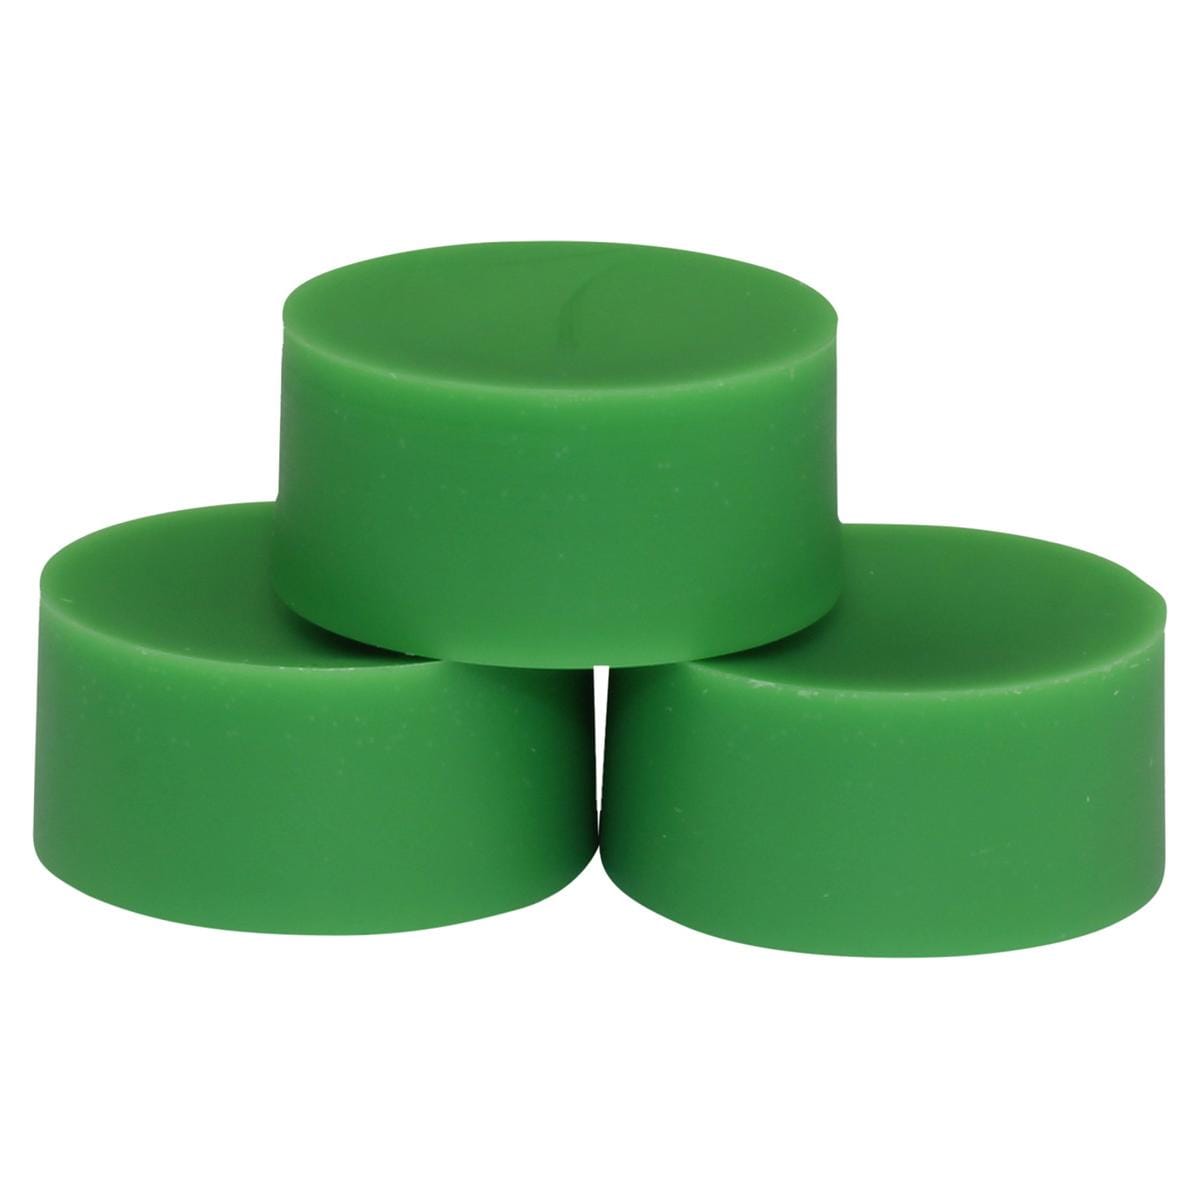 CONTACT Modellierwachschip - Smaragd-Grün, Packung 3 x 25 g